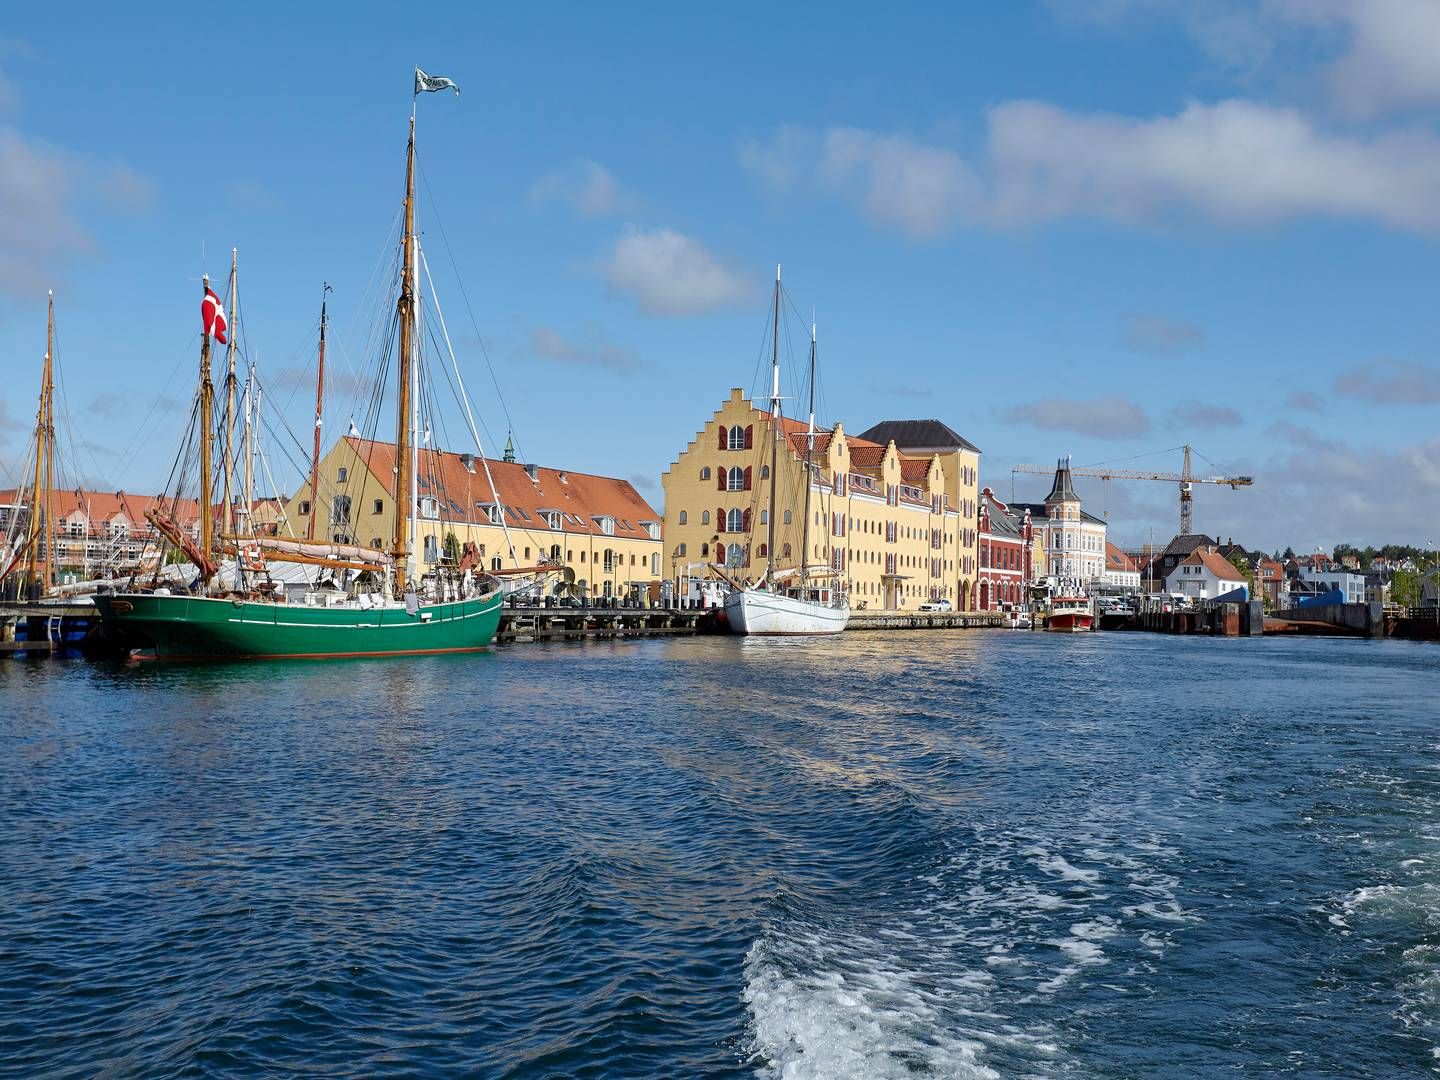 Borch har kontorer i Svendborg, Assens, Nyborg, Faaborg og Rudkøbing. Her ses havnen i Svendborg. | Foto: Morten Langkilde